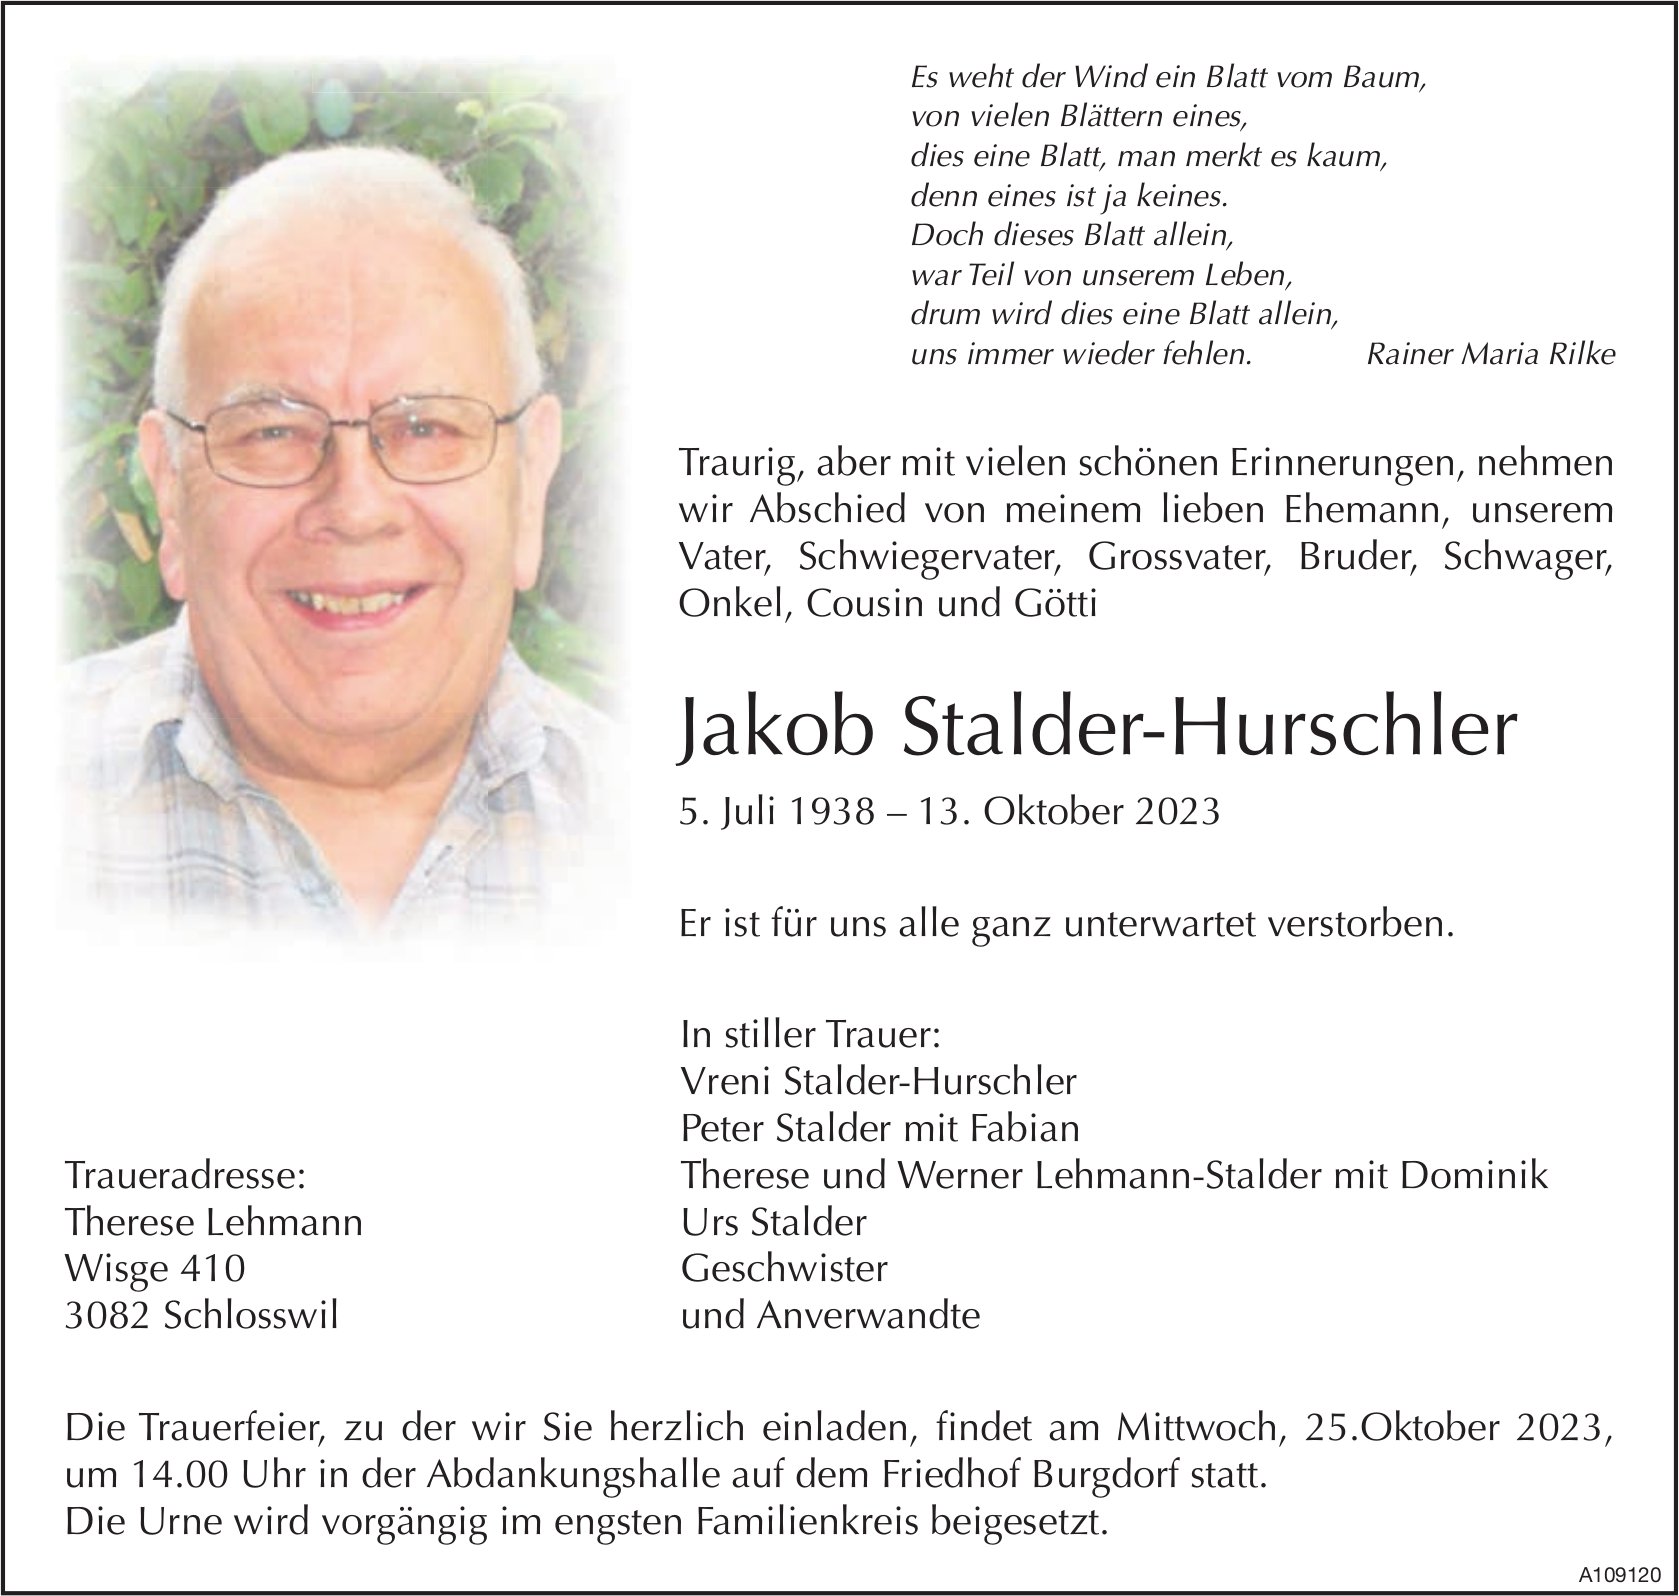 Jakob Stalder-Hurschler, Oktober 2023 / TA